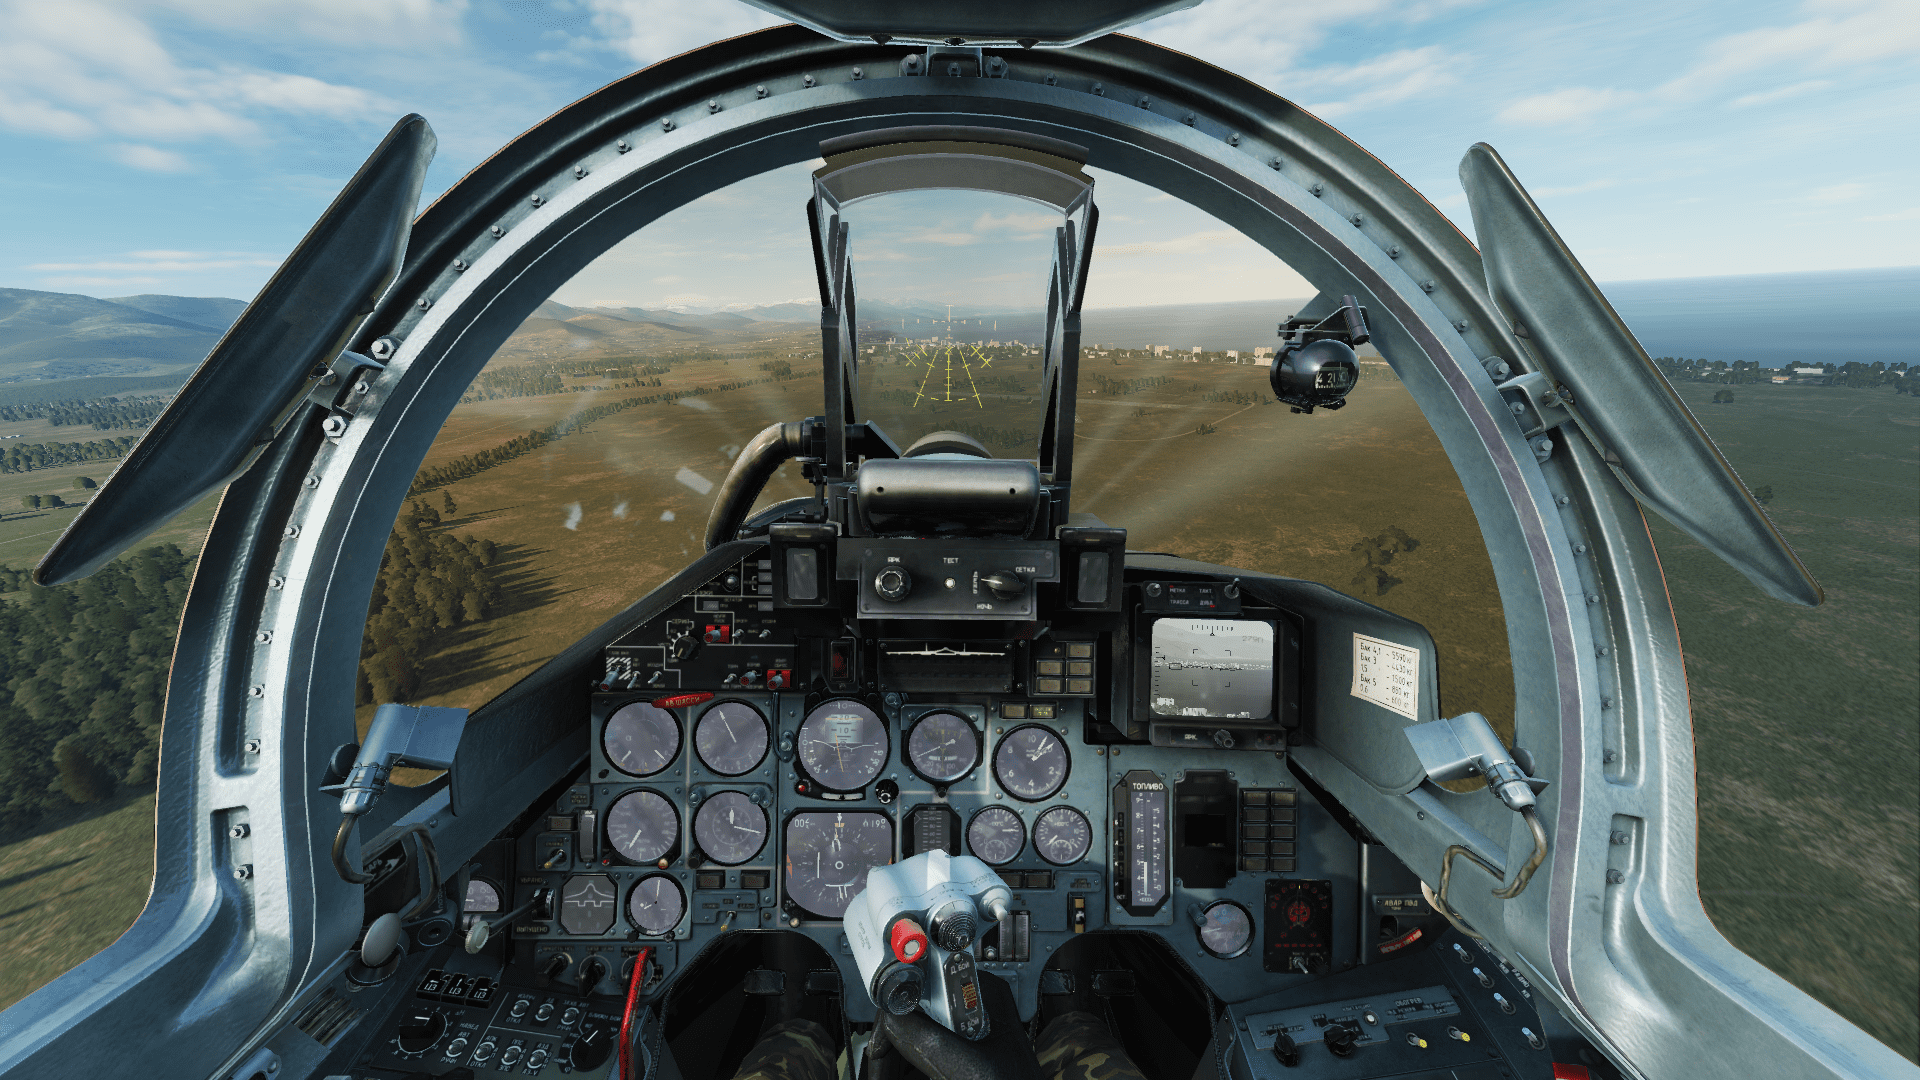 Мод на Су-17М4 с кабиной Су-27 / Mod on the Su-17M4 with the cockpit of the Su-27